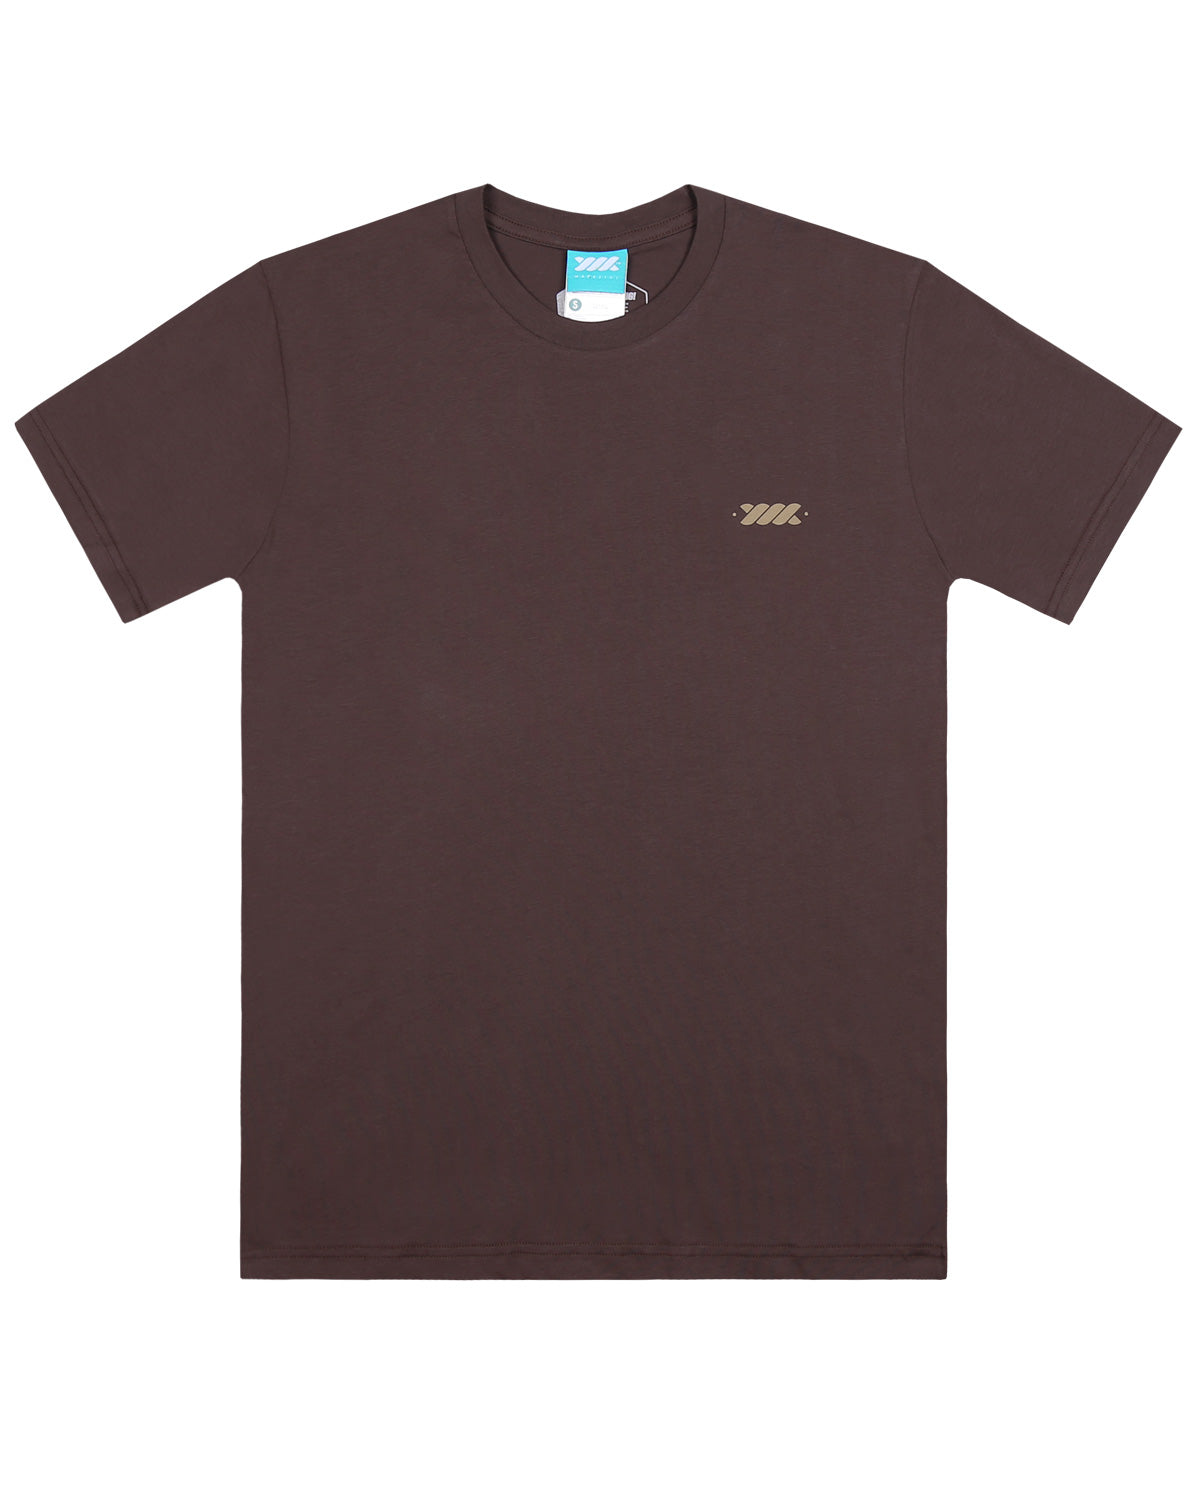 Wadezig! T-Shirt -Raised Brown